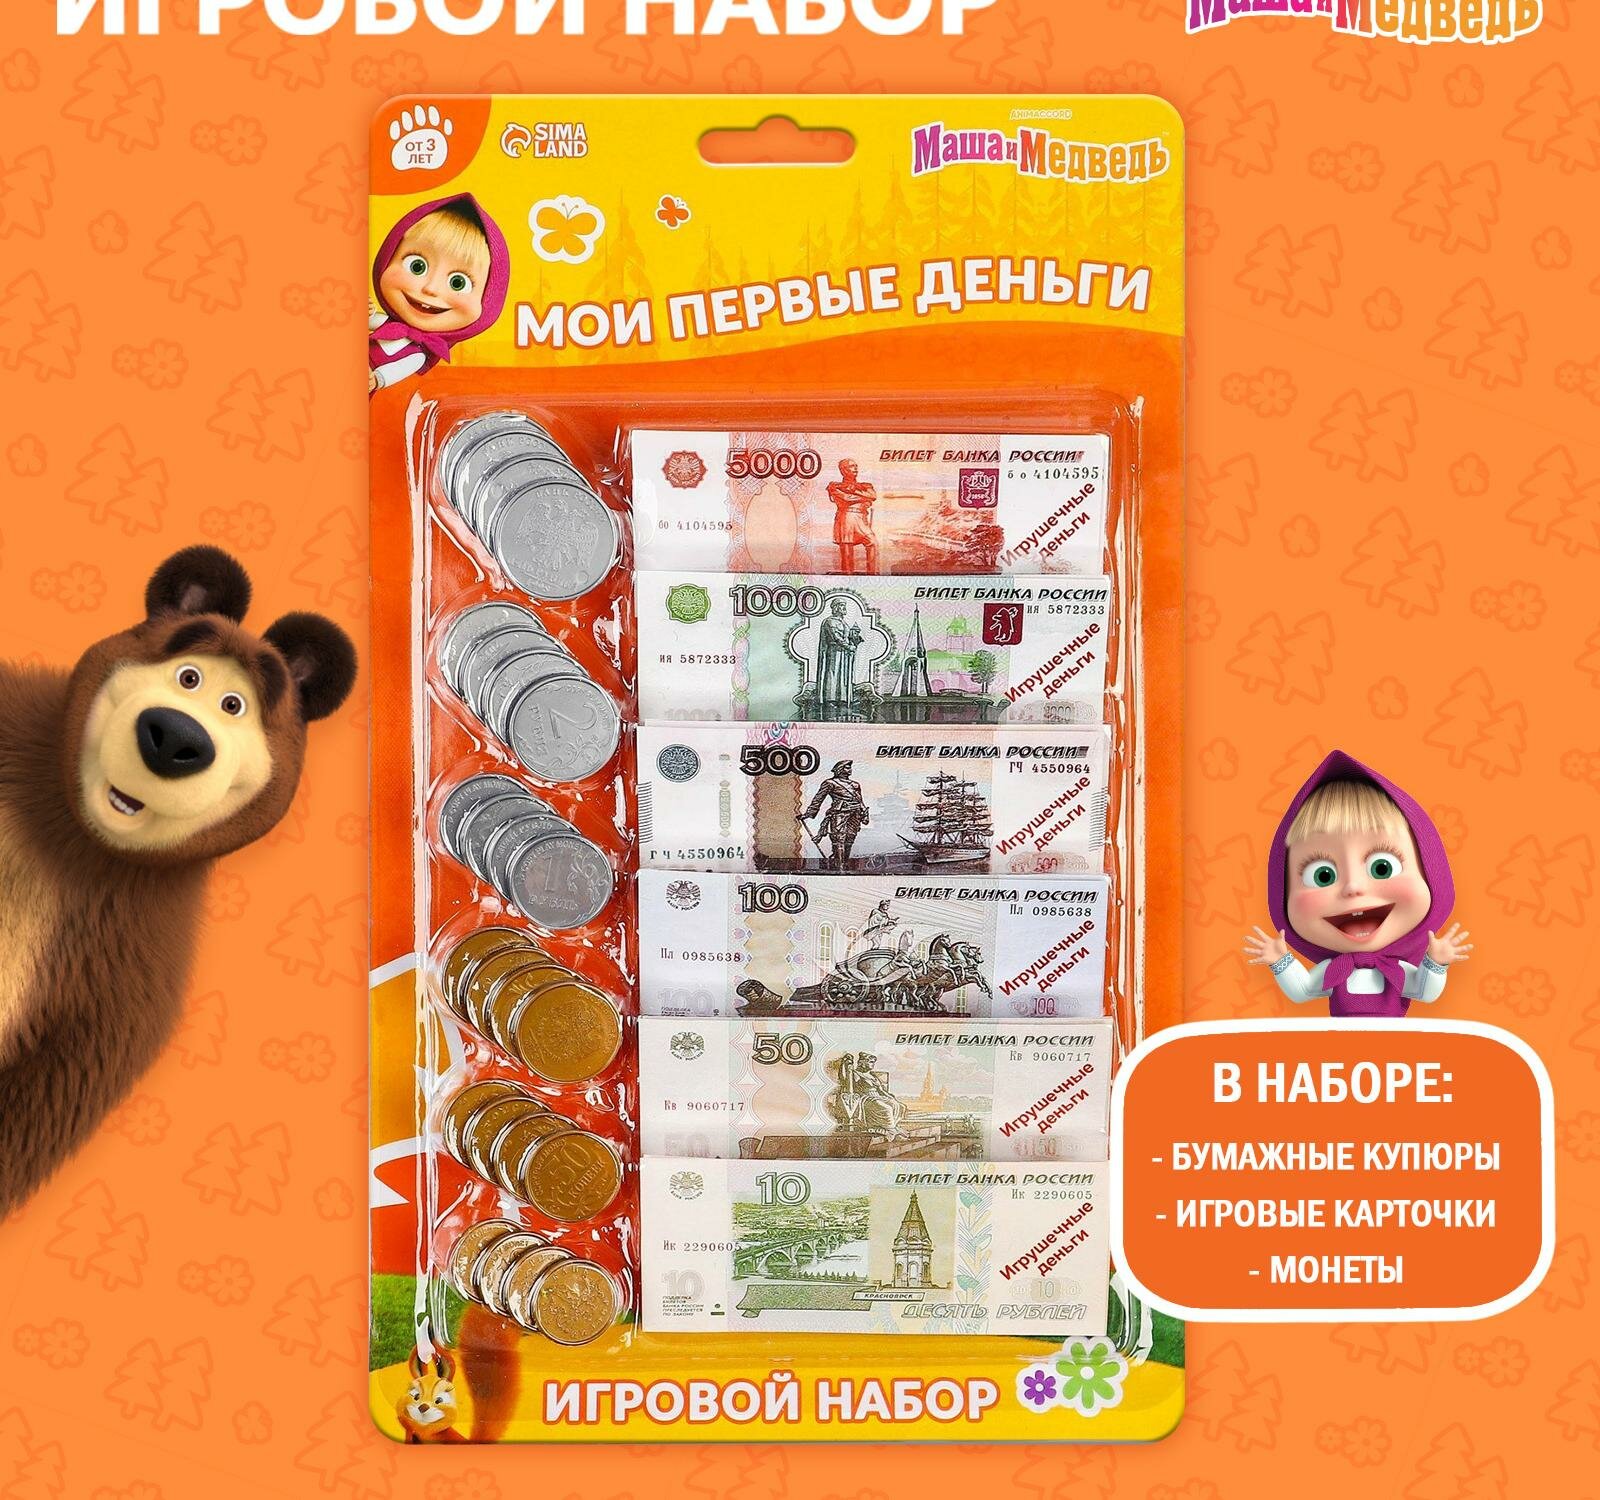 Игровой набор "Мои первые деньги", Маша и Медведь